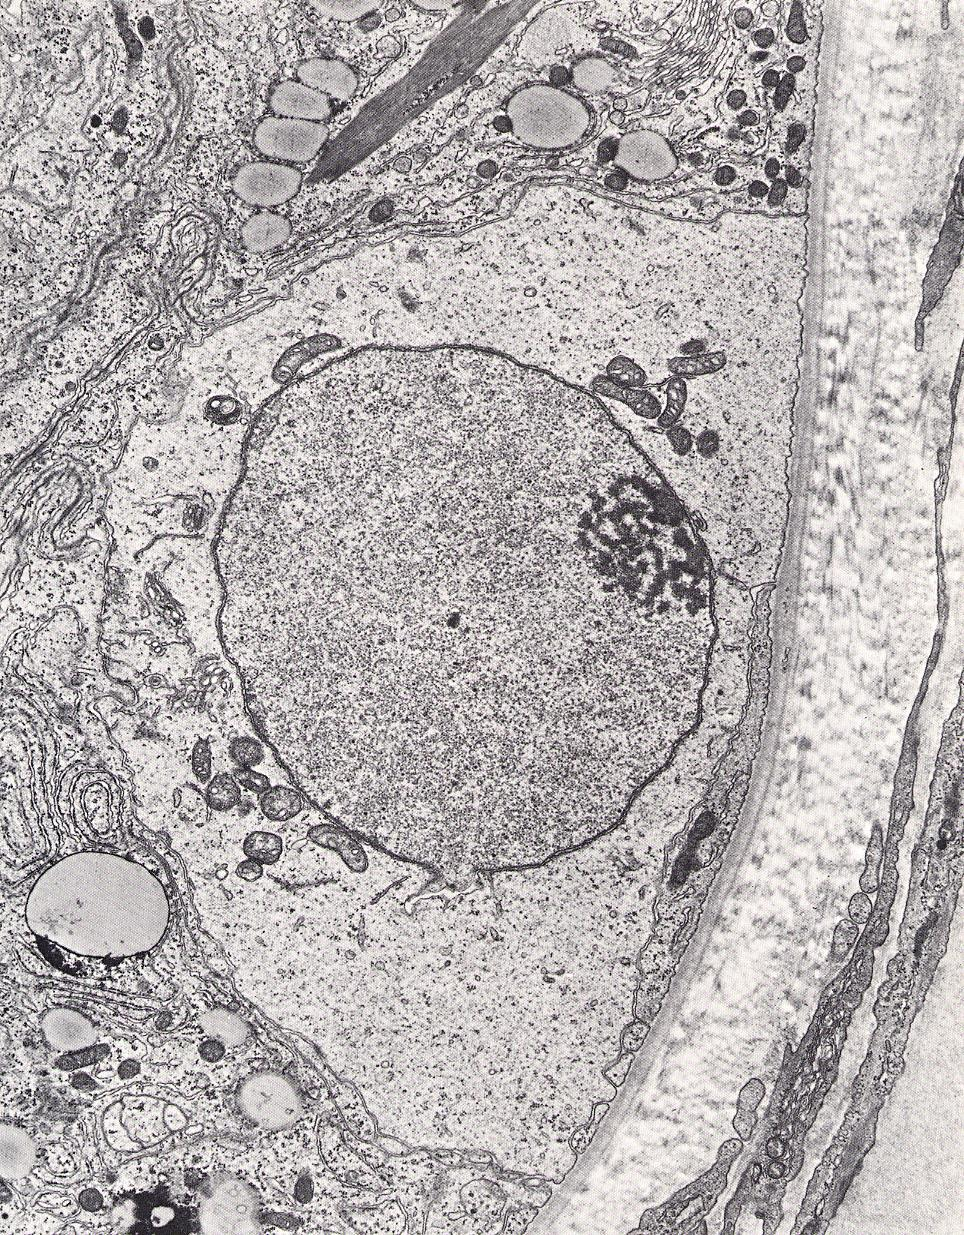 Spermatogonie A Kmenové buňky, které se opakovaně mitoticky dělí Poslední